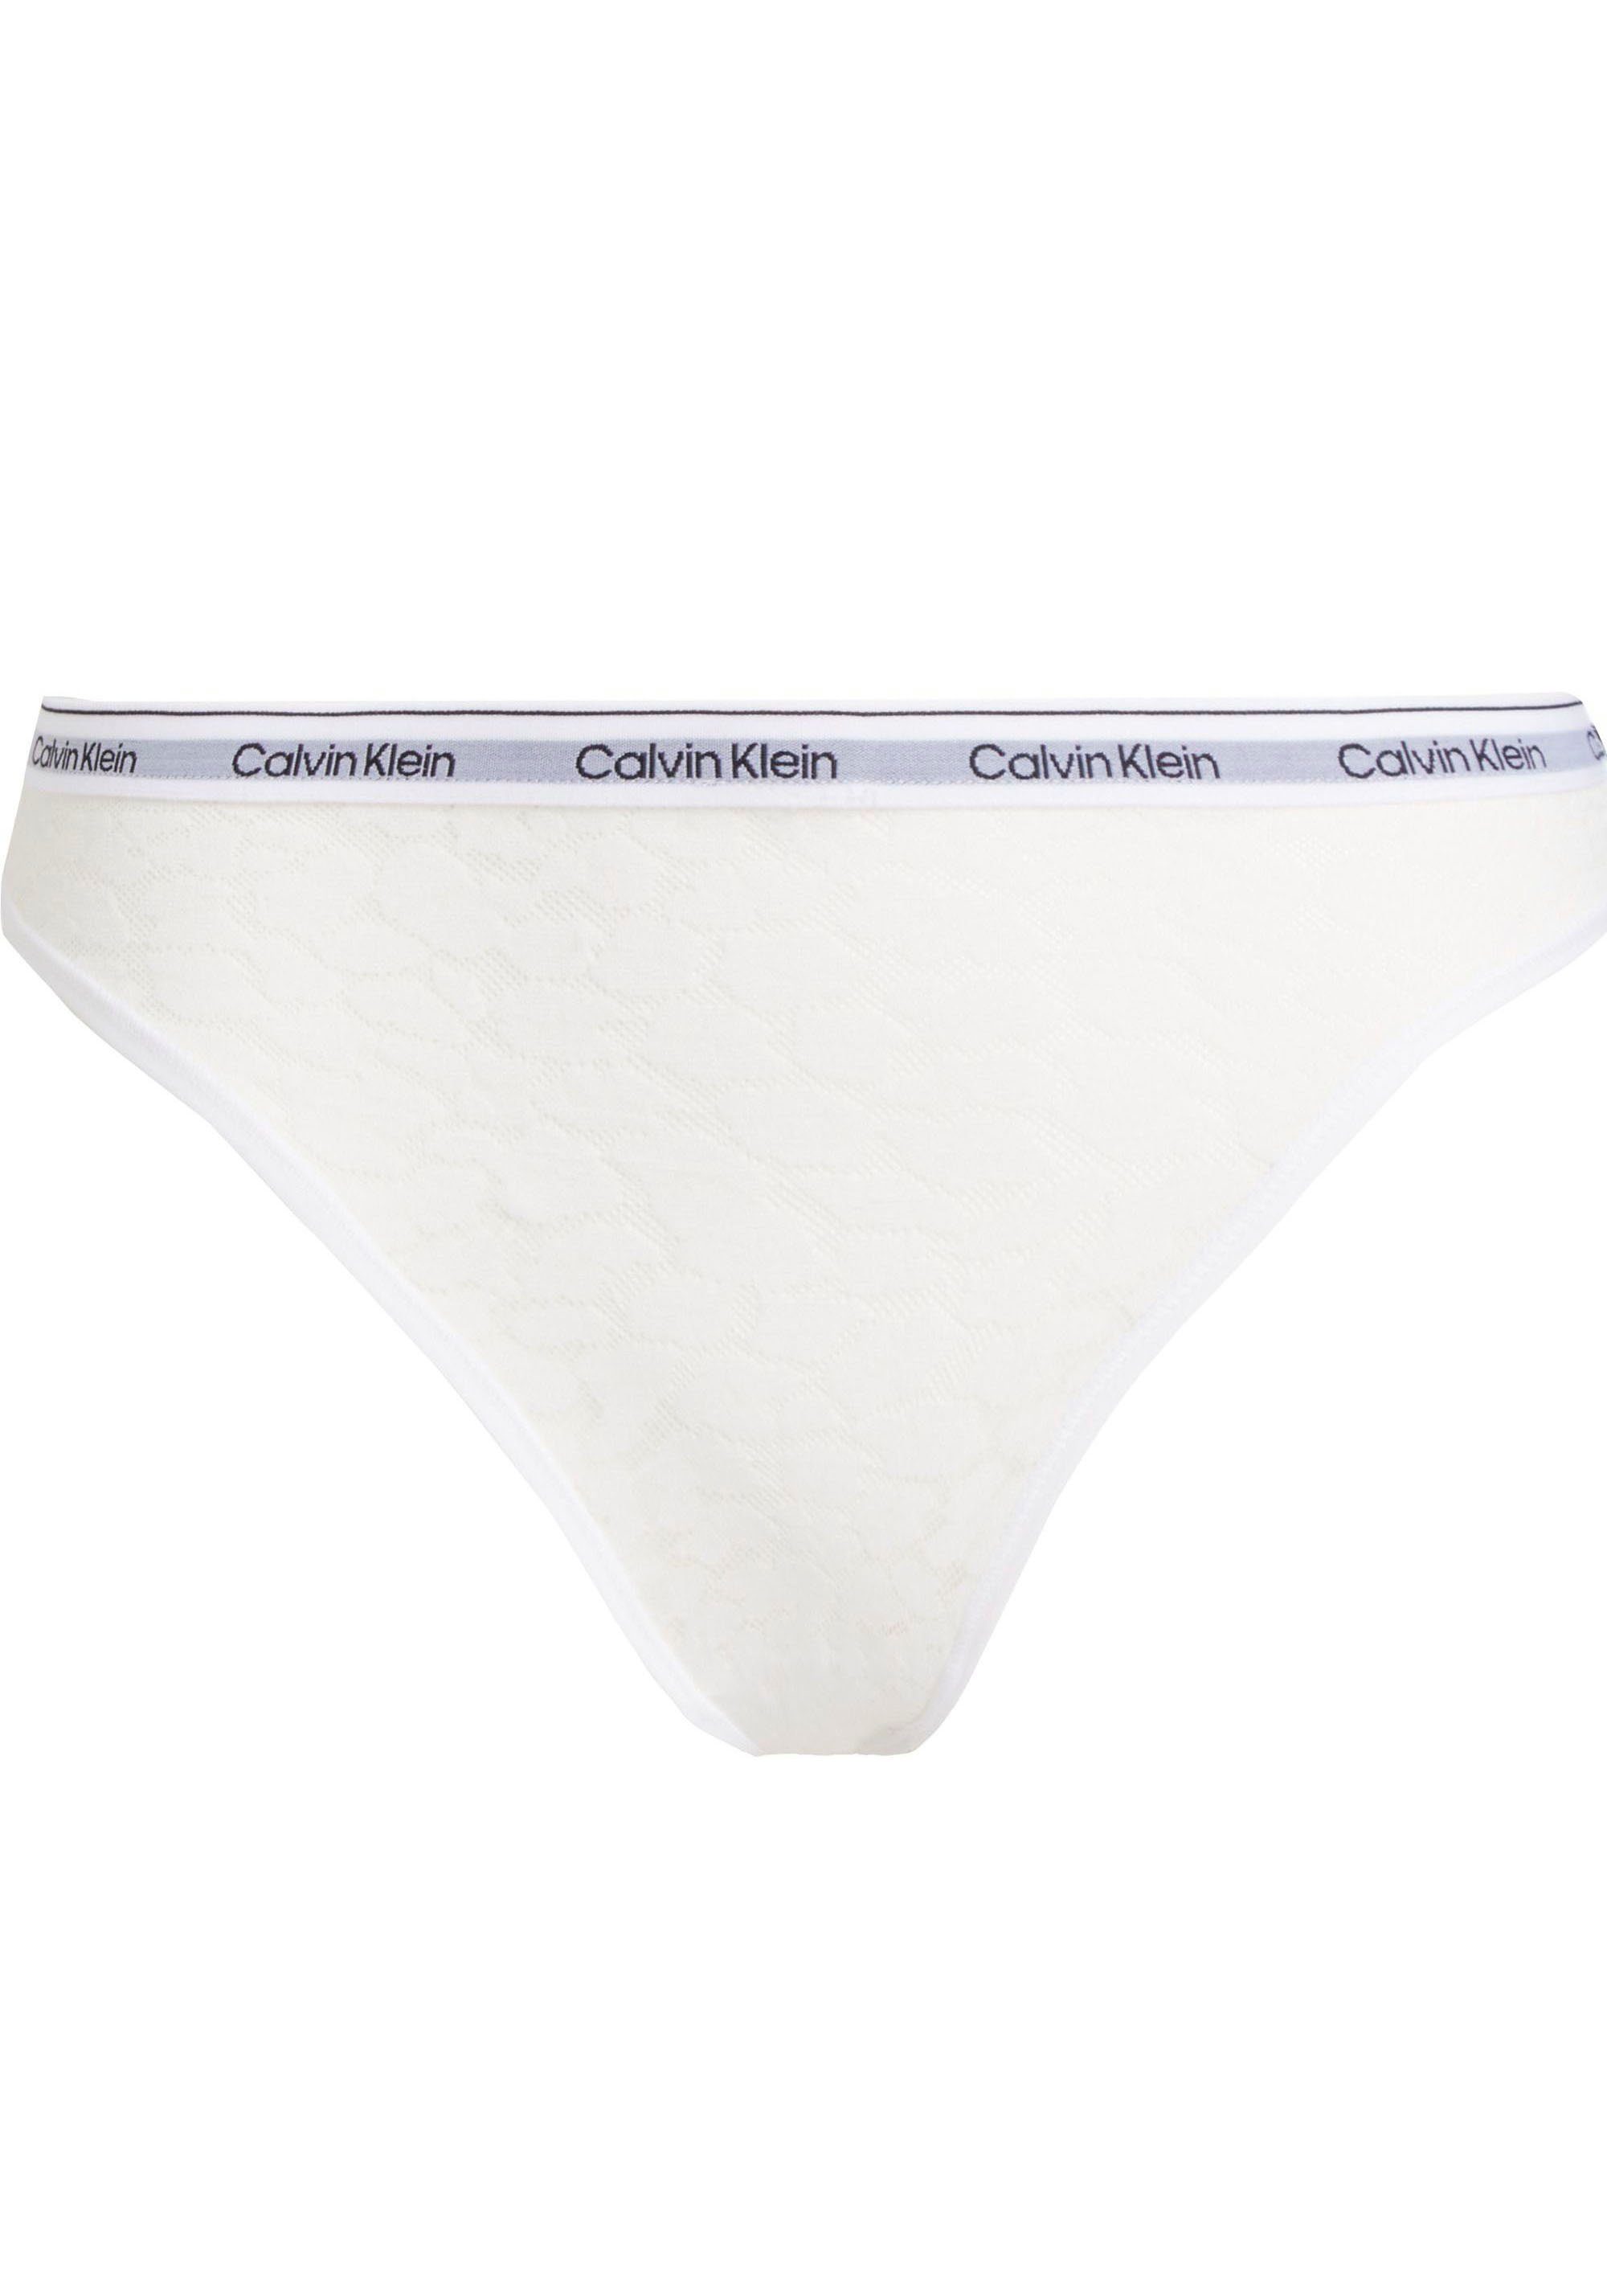 LEG weiß HIGH Underwear Calvin Klein mit am Bund T-String THONG CK-Logo